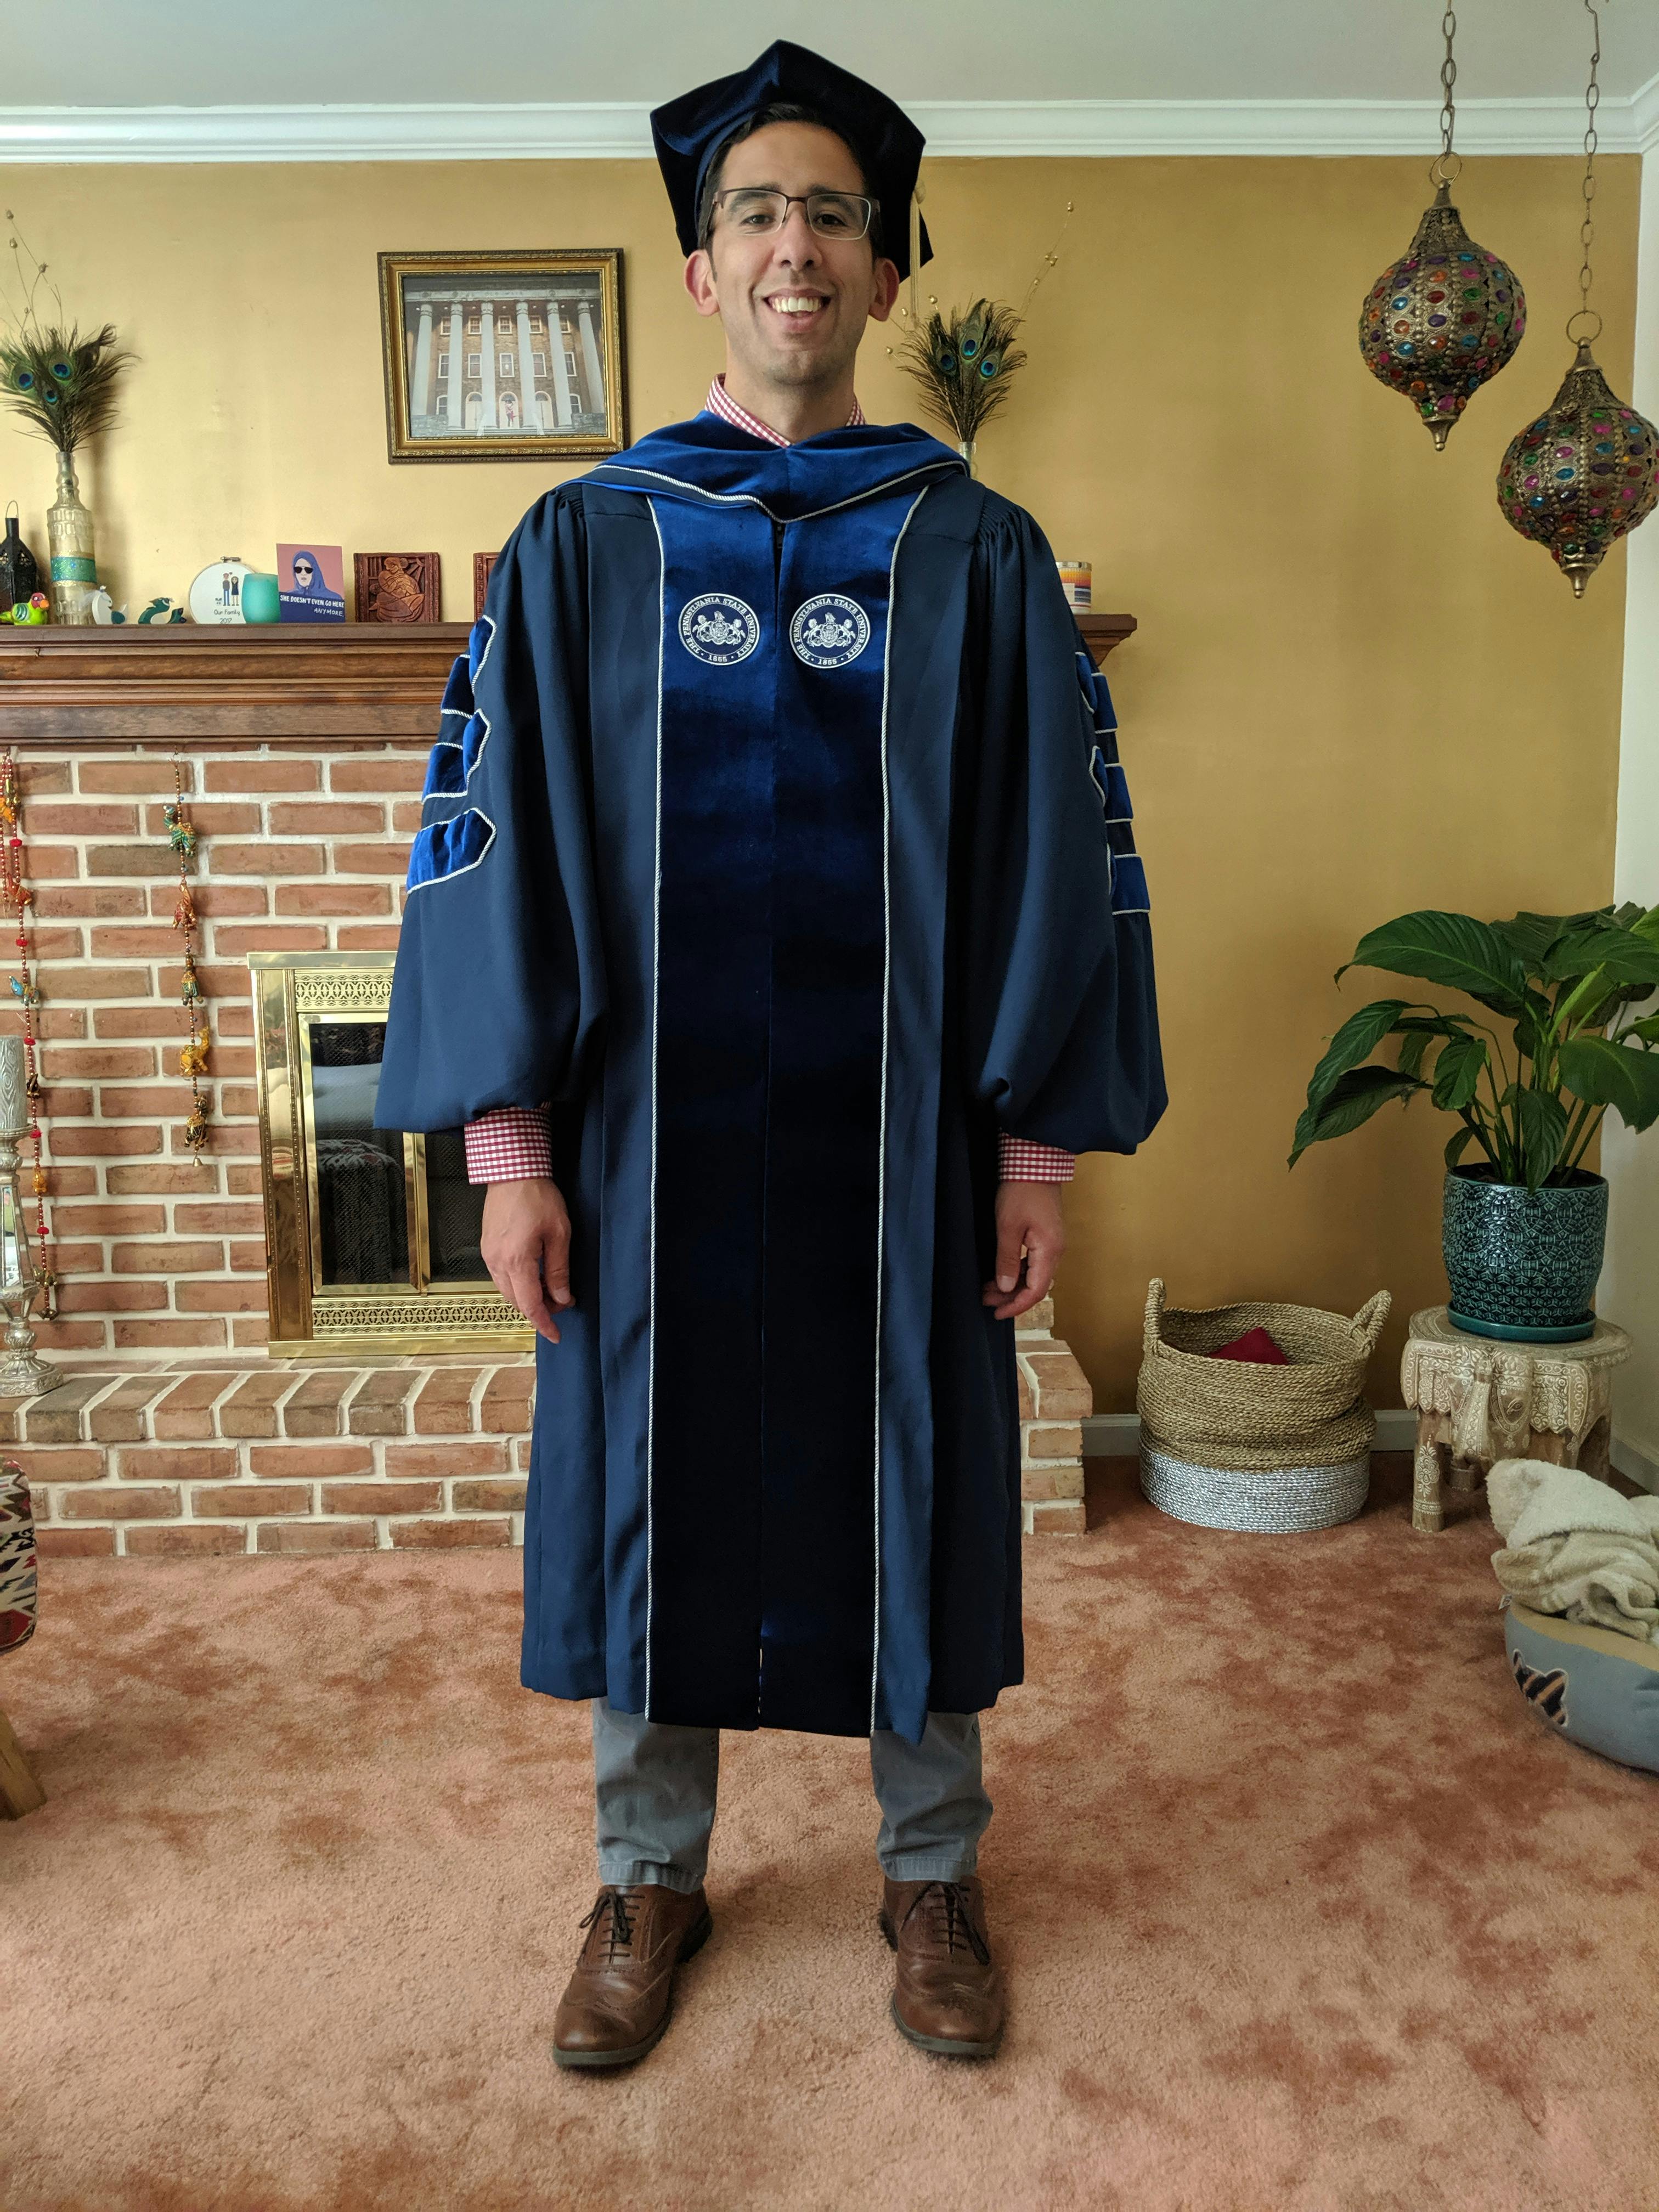 penn state phd graduation gown